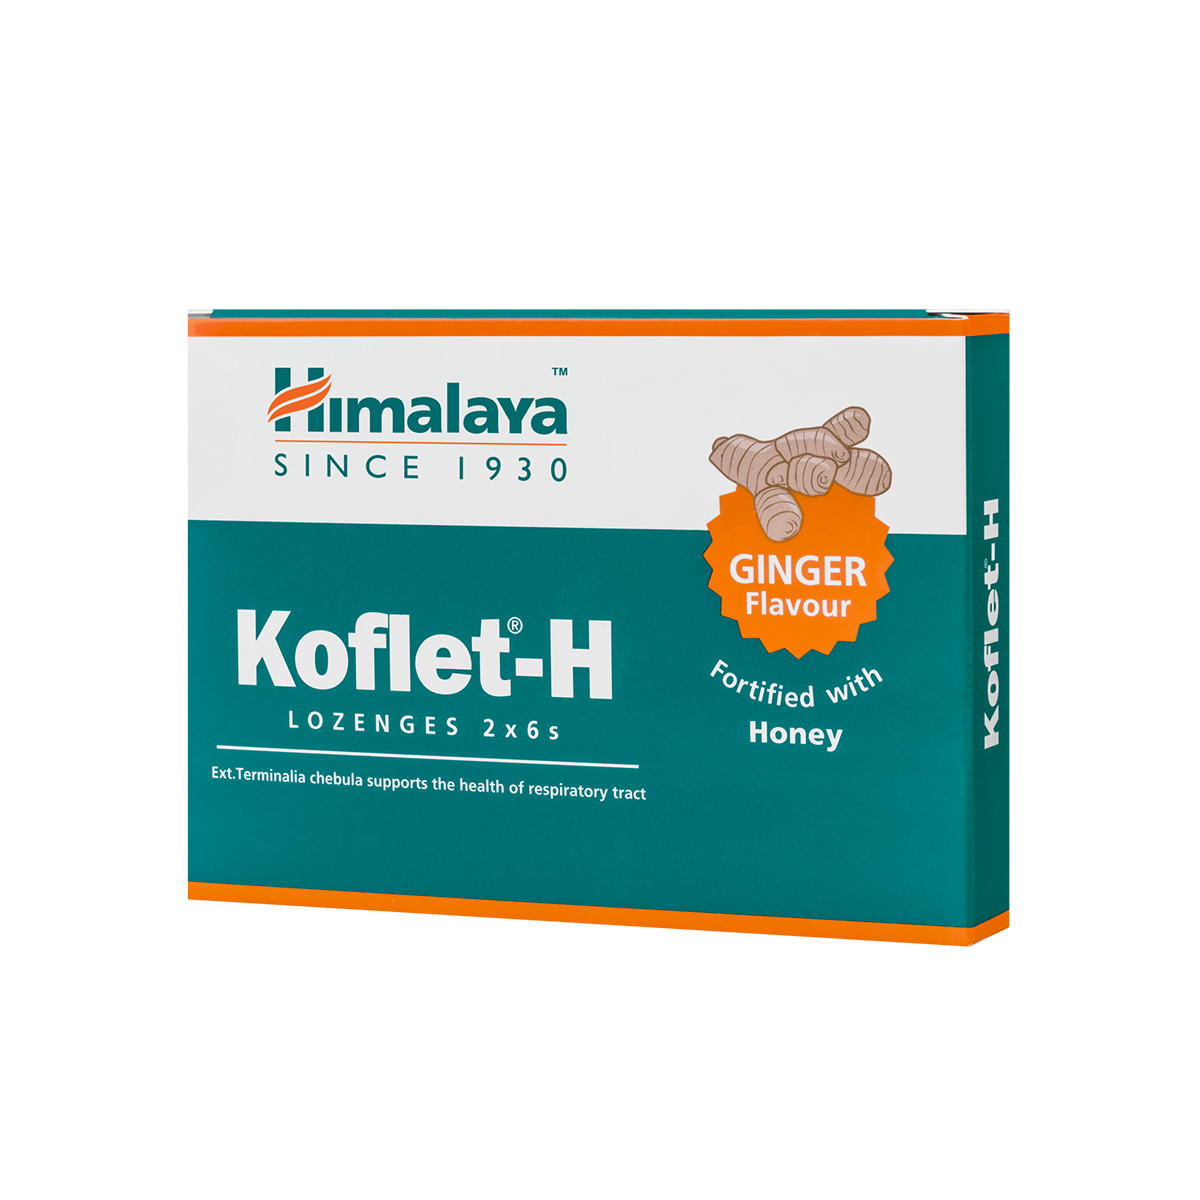 Dureri de gat - Koflet-H cu aromă de ghimbir, 12 pastile, Himalaya, sinapis.ro